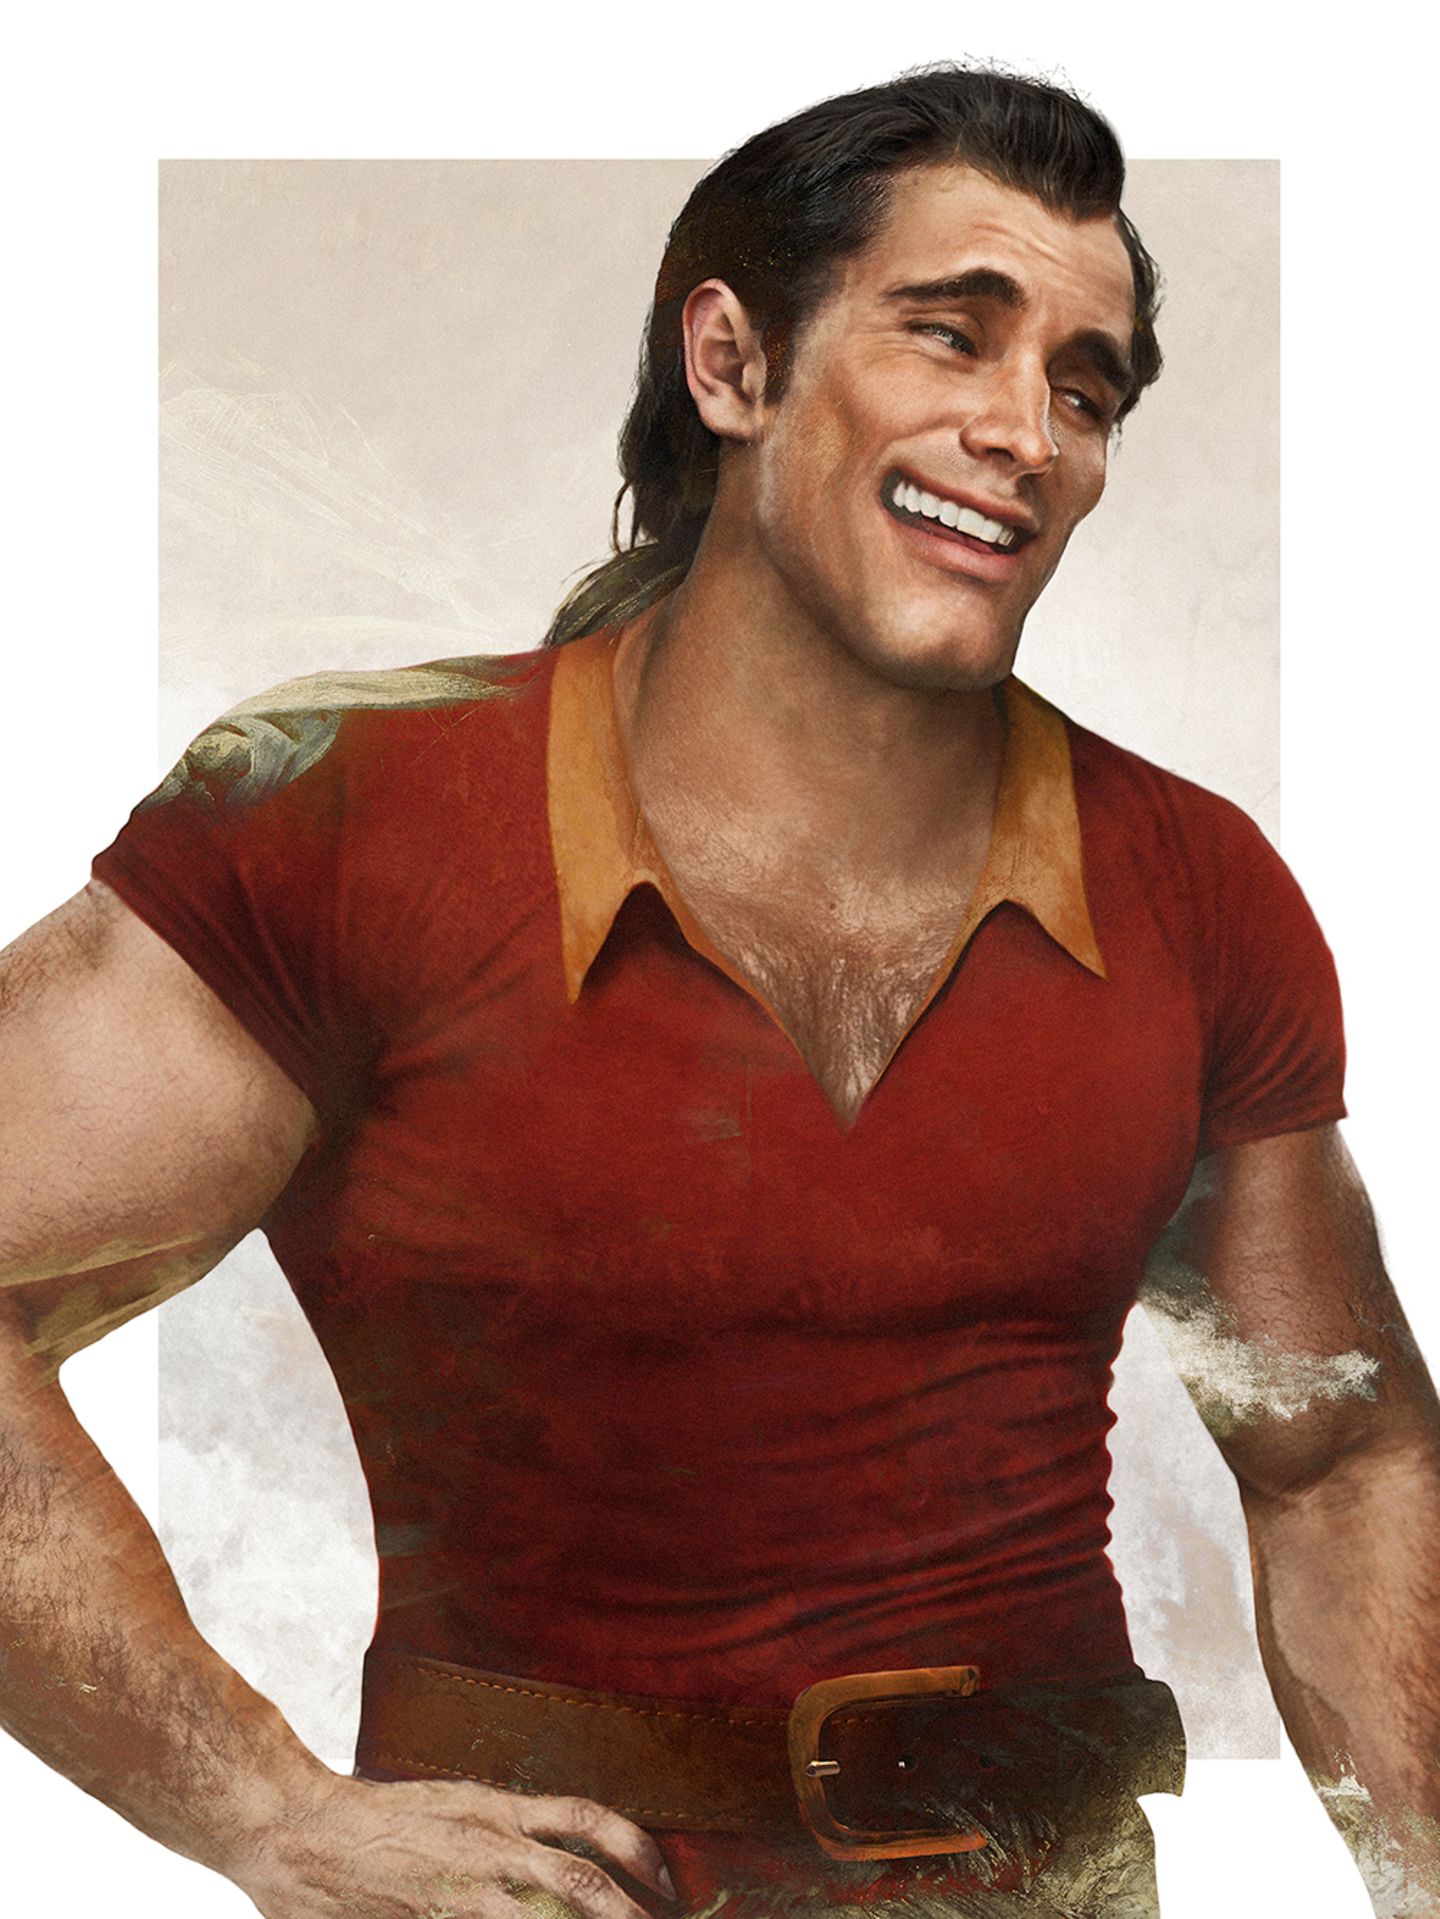 Gaston aus "Die Schöne und das Biest"